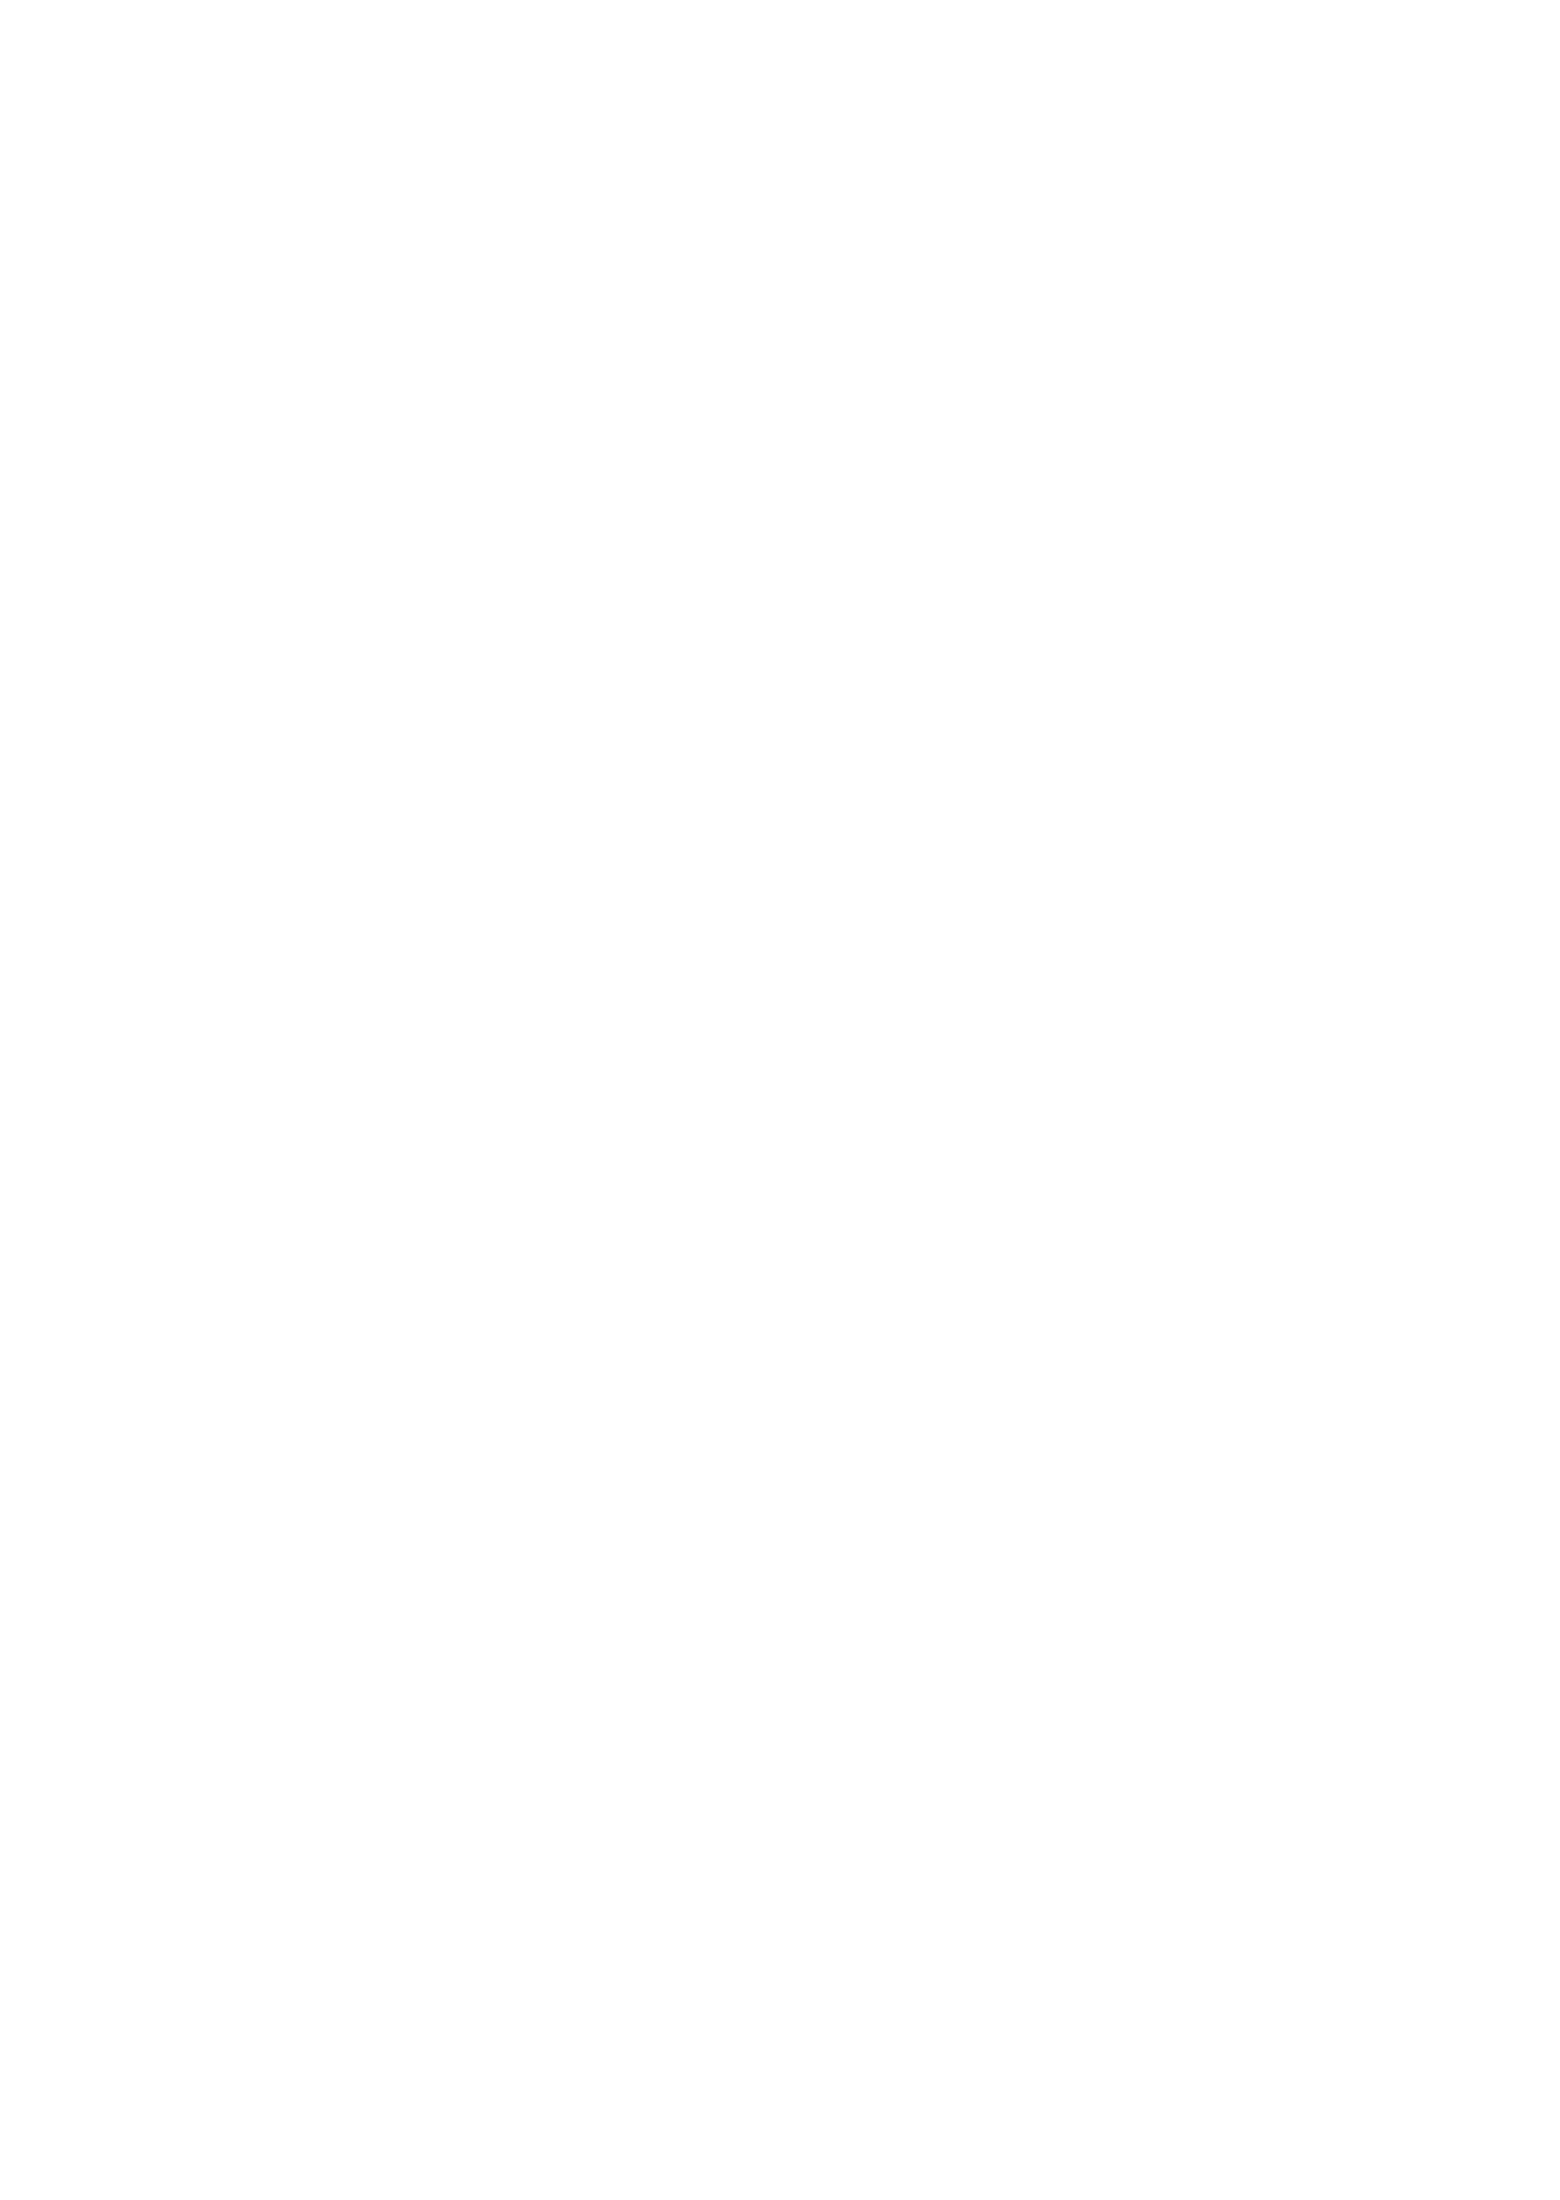 titre de l'affiche - On Purge Feydeau !